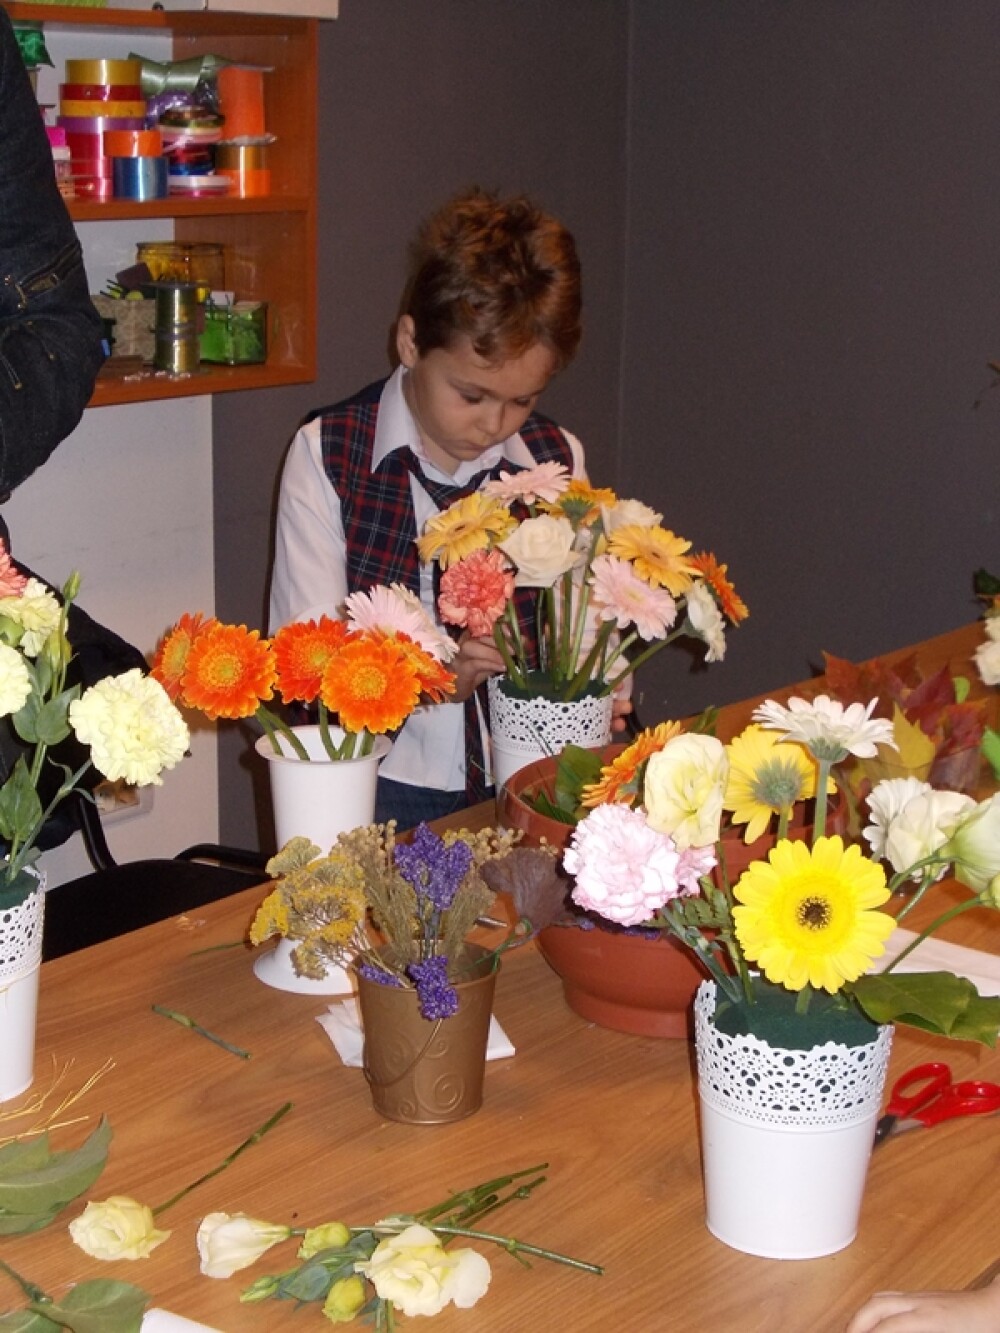 Prichindei, dar florari priceputi. Vezi ce aranjamente florale au reusit sa faca patru copii - Imaginea 6